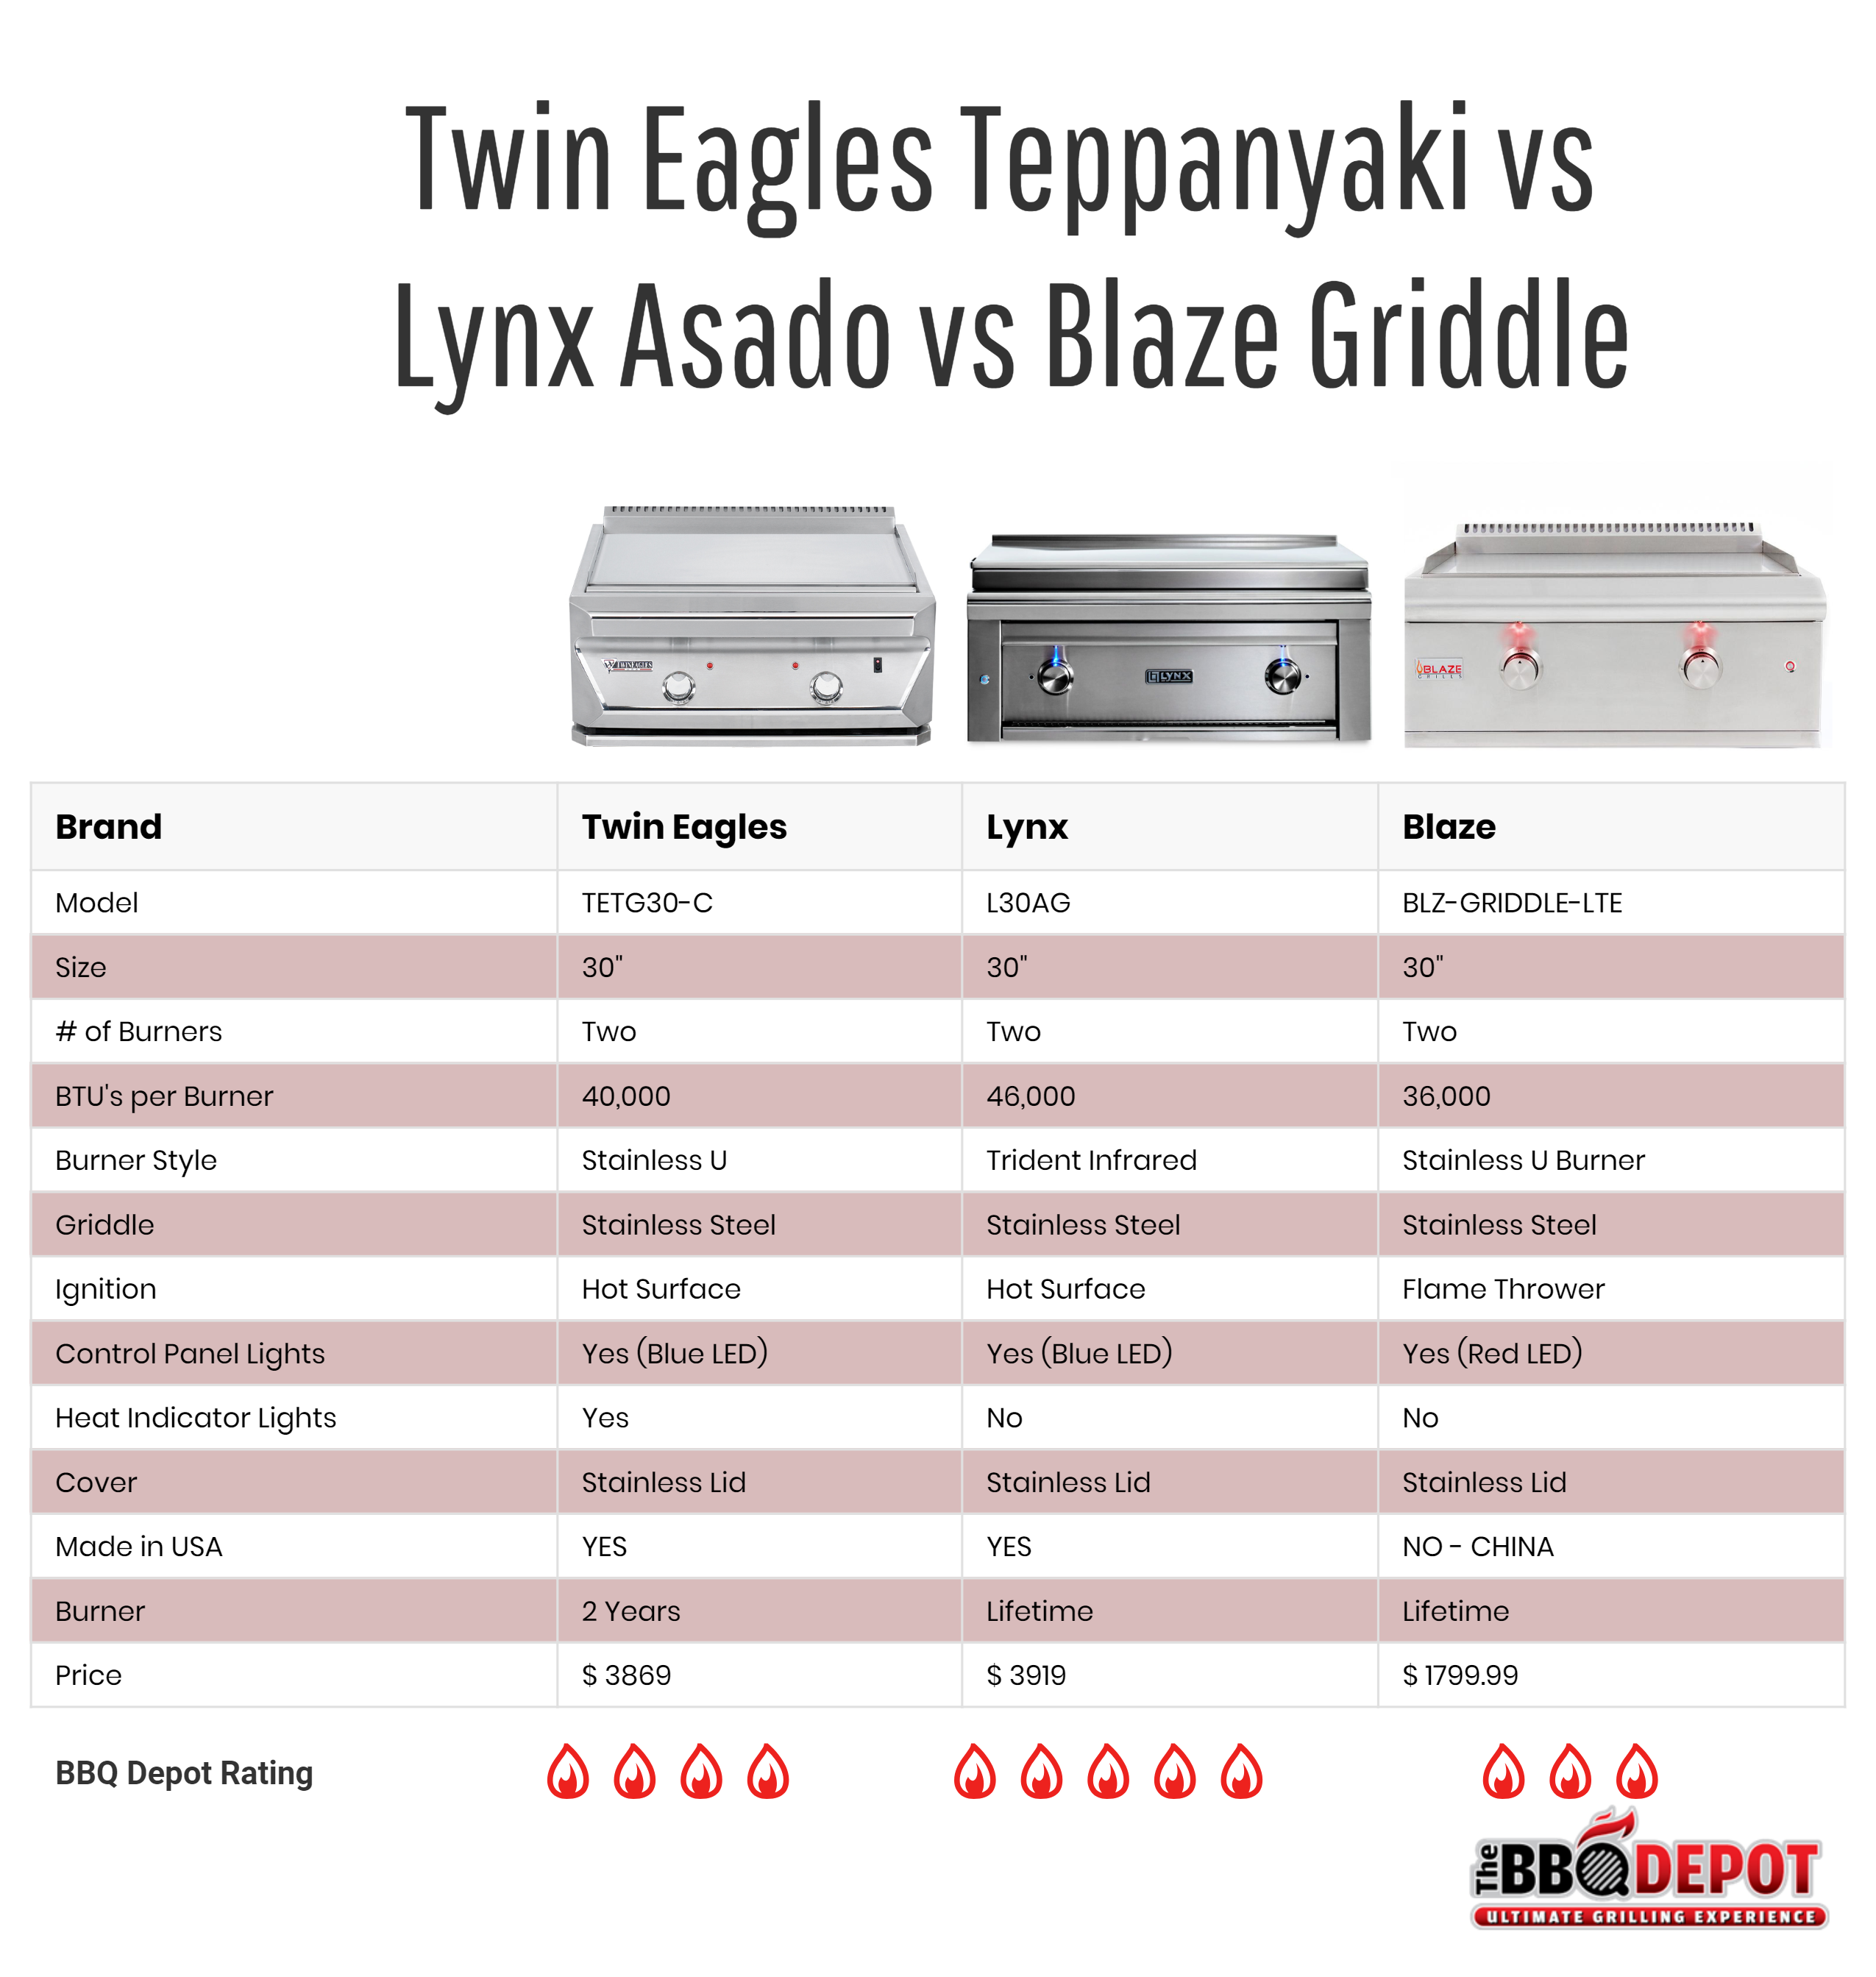 Twin Eagles Teppanyaki vs Lynx Asado vs Blaze Griddle